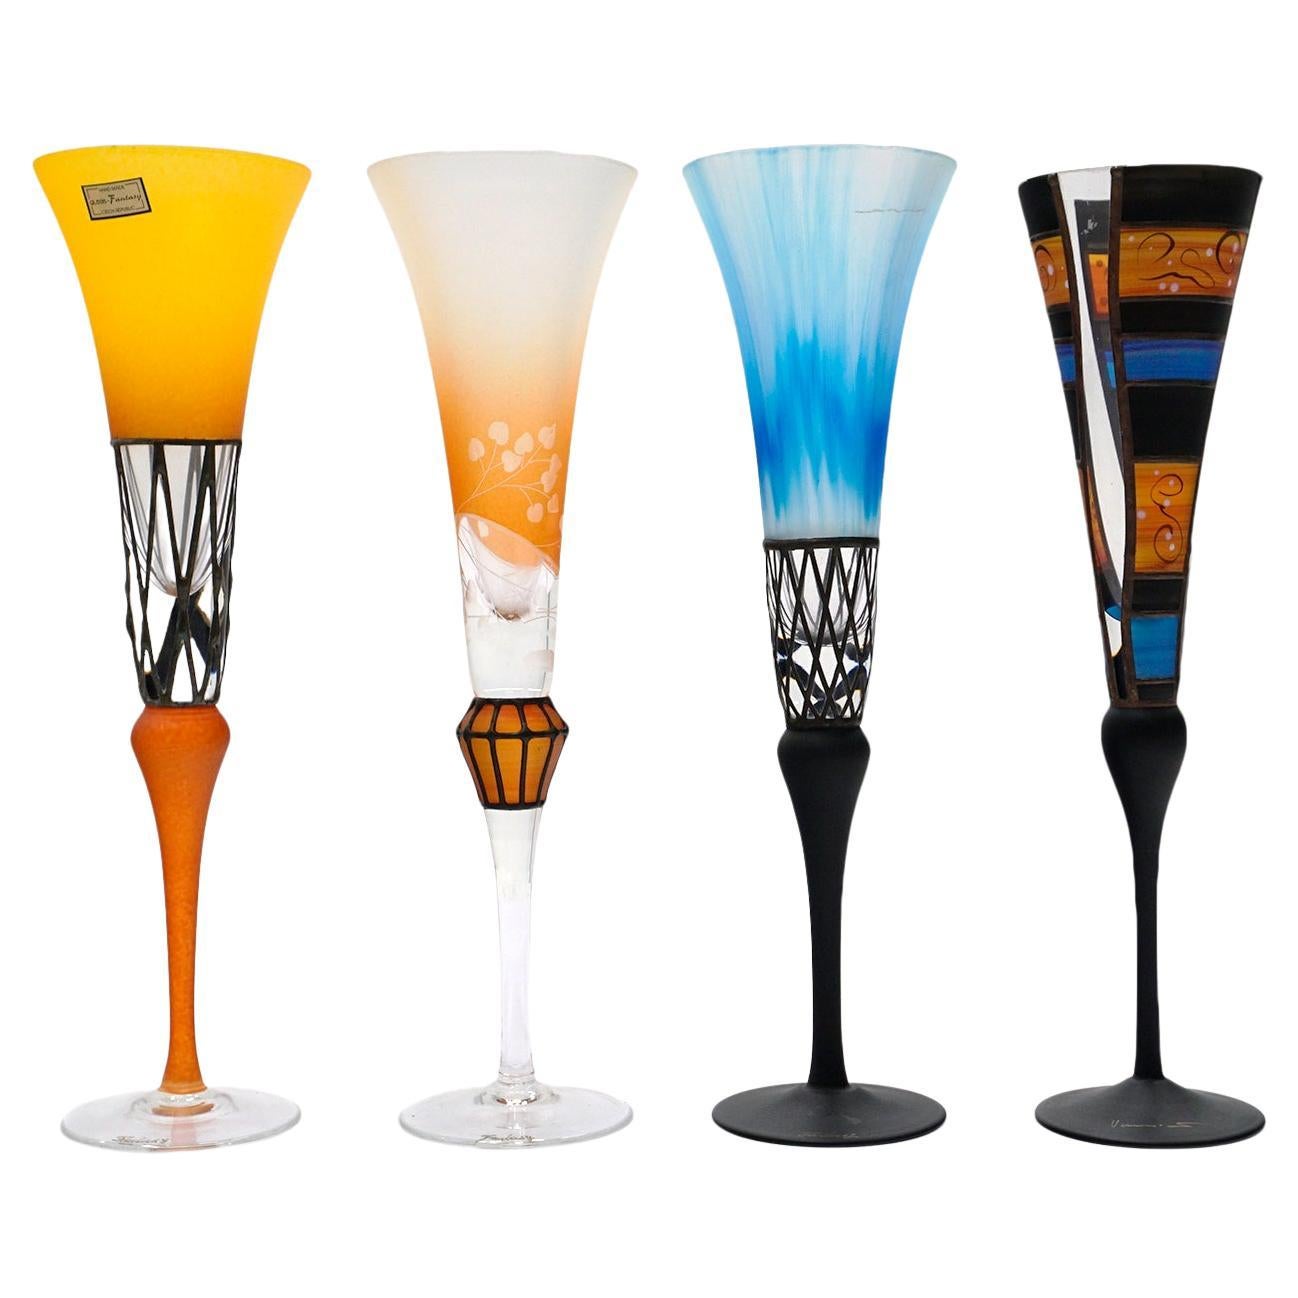 Four Colorful Glass Champagne Flutes, Czech Republic, Mint Conditon